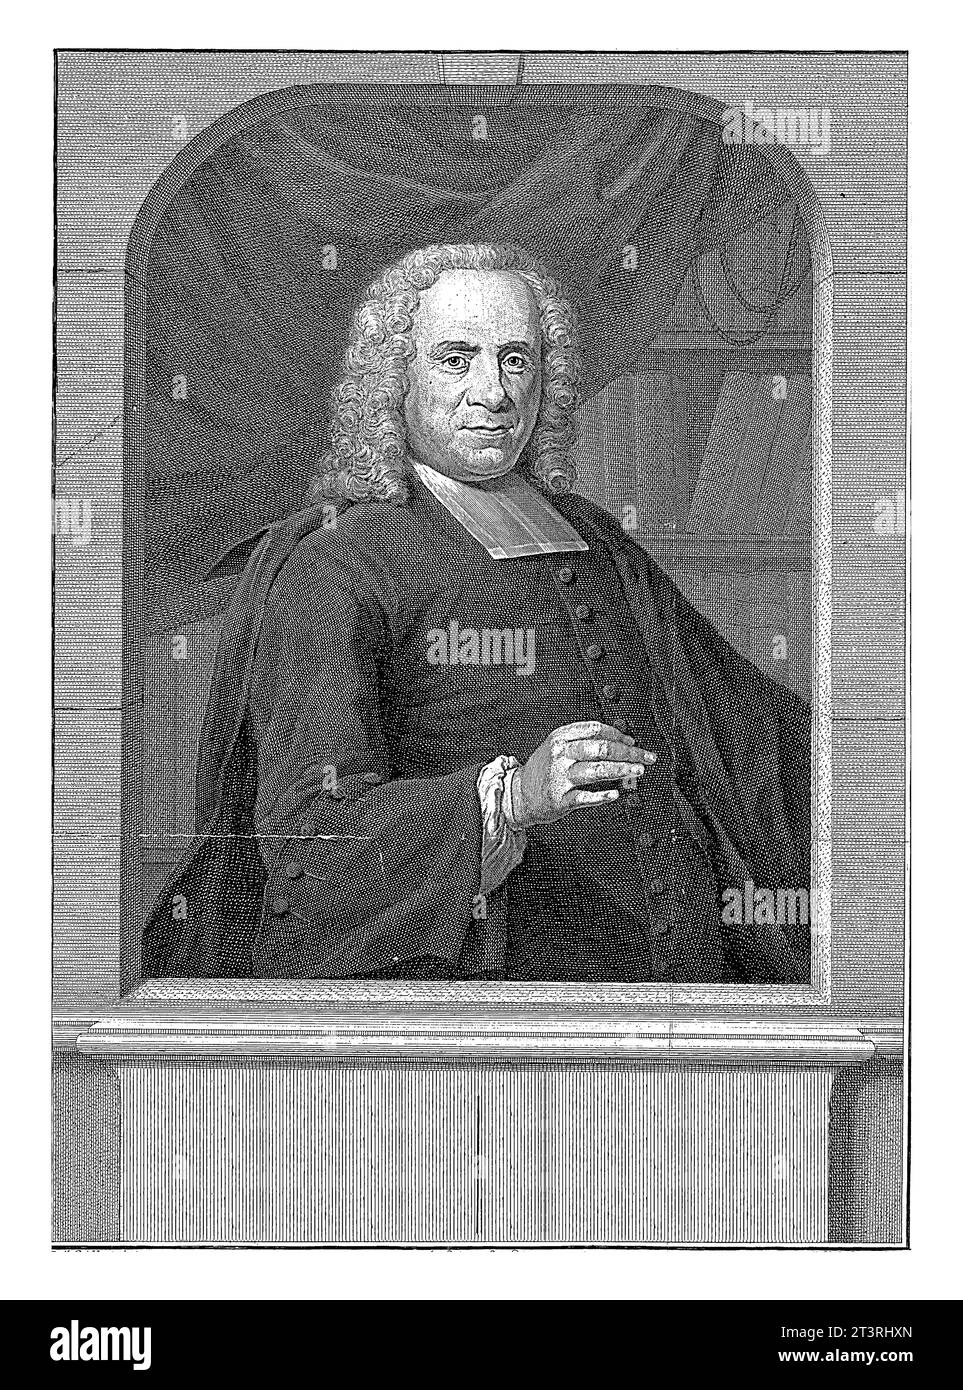 Portrait of Wilhelmus van Eenhoorn, Jacob Houbraken, after Jan Maurits Quinkhard, 1750 - 1755 Wilhelmus van Eenhoorn at the age of 56, Stock Photo